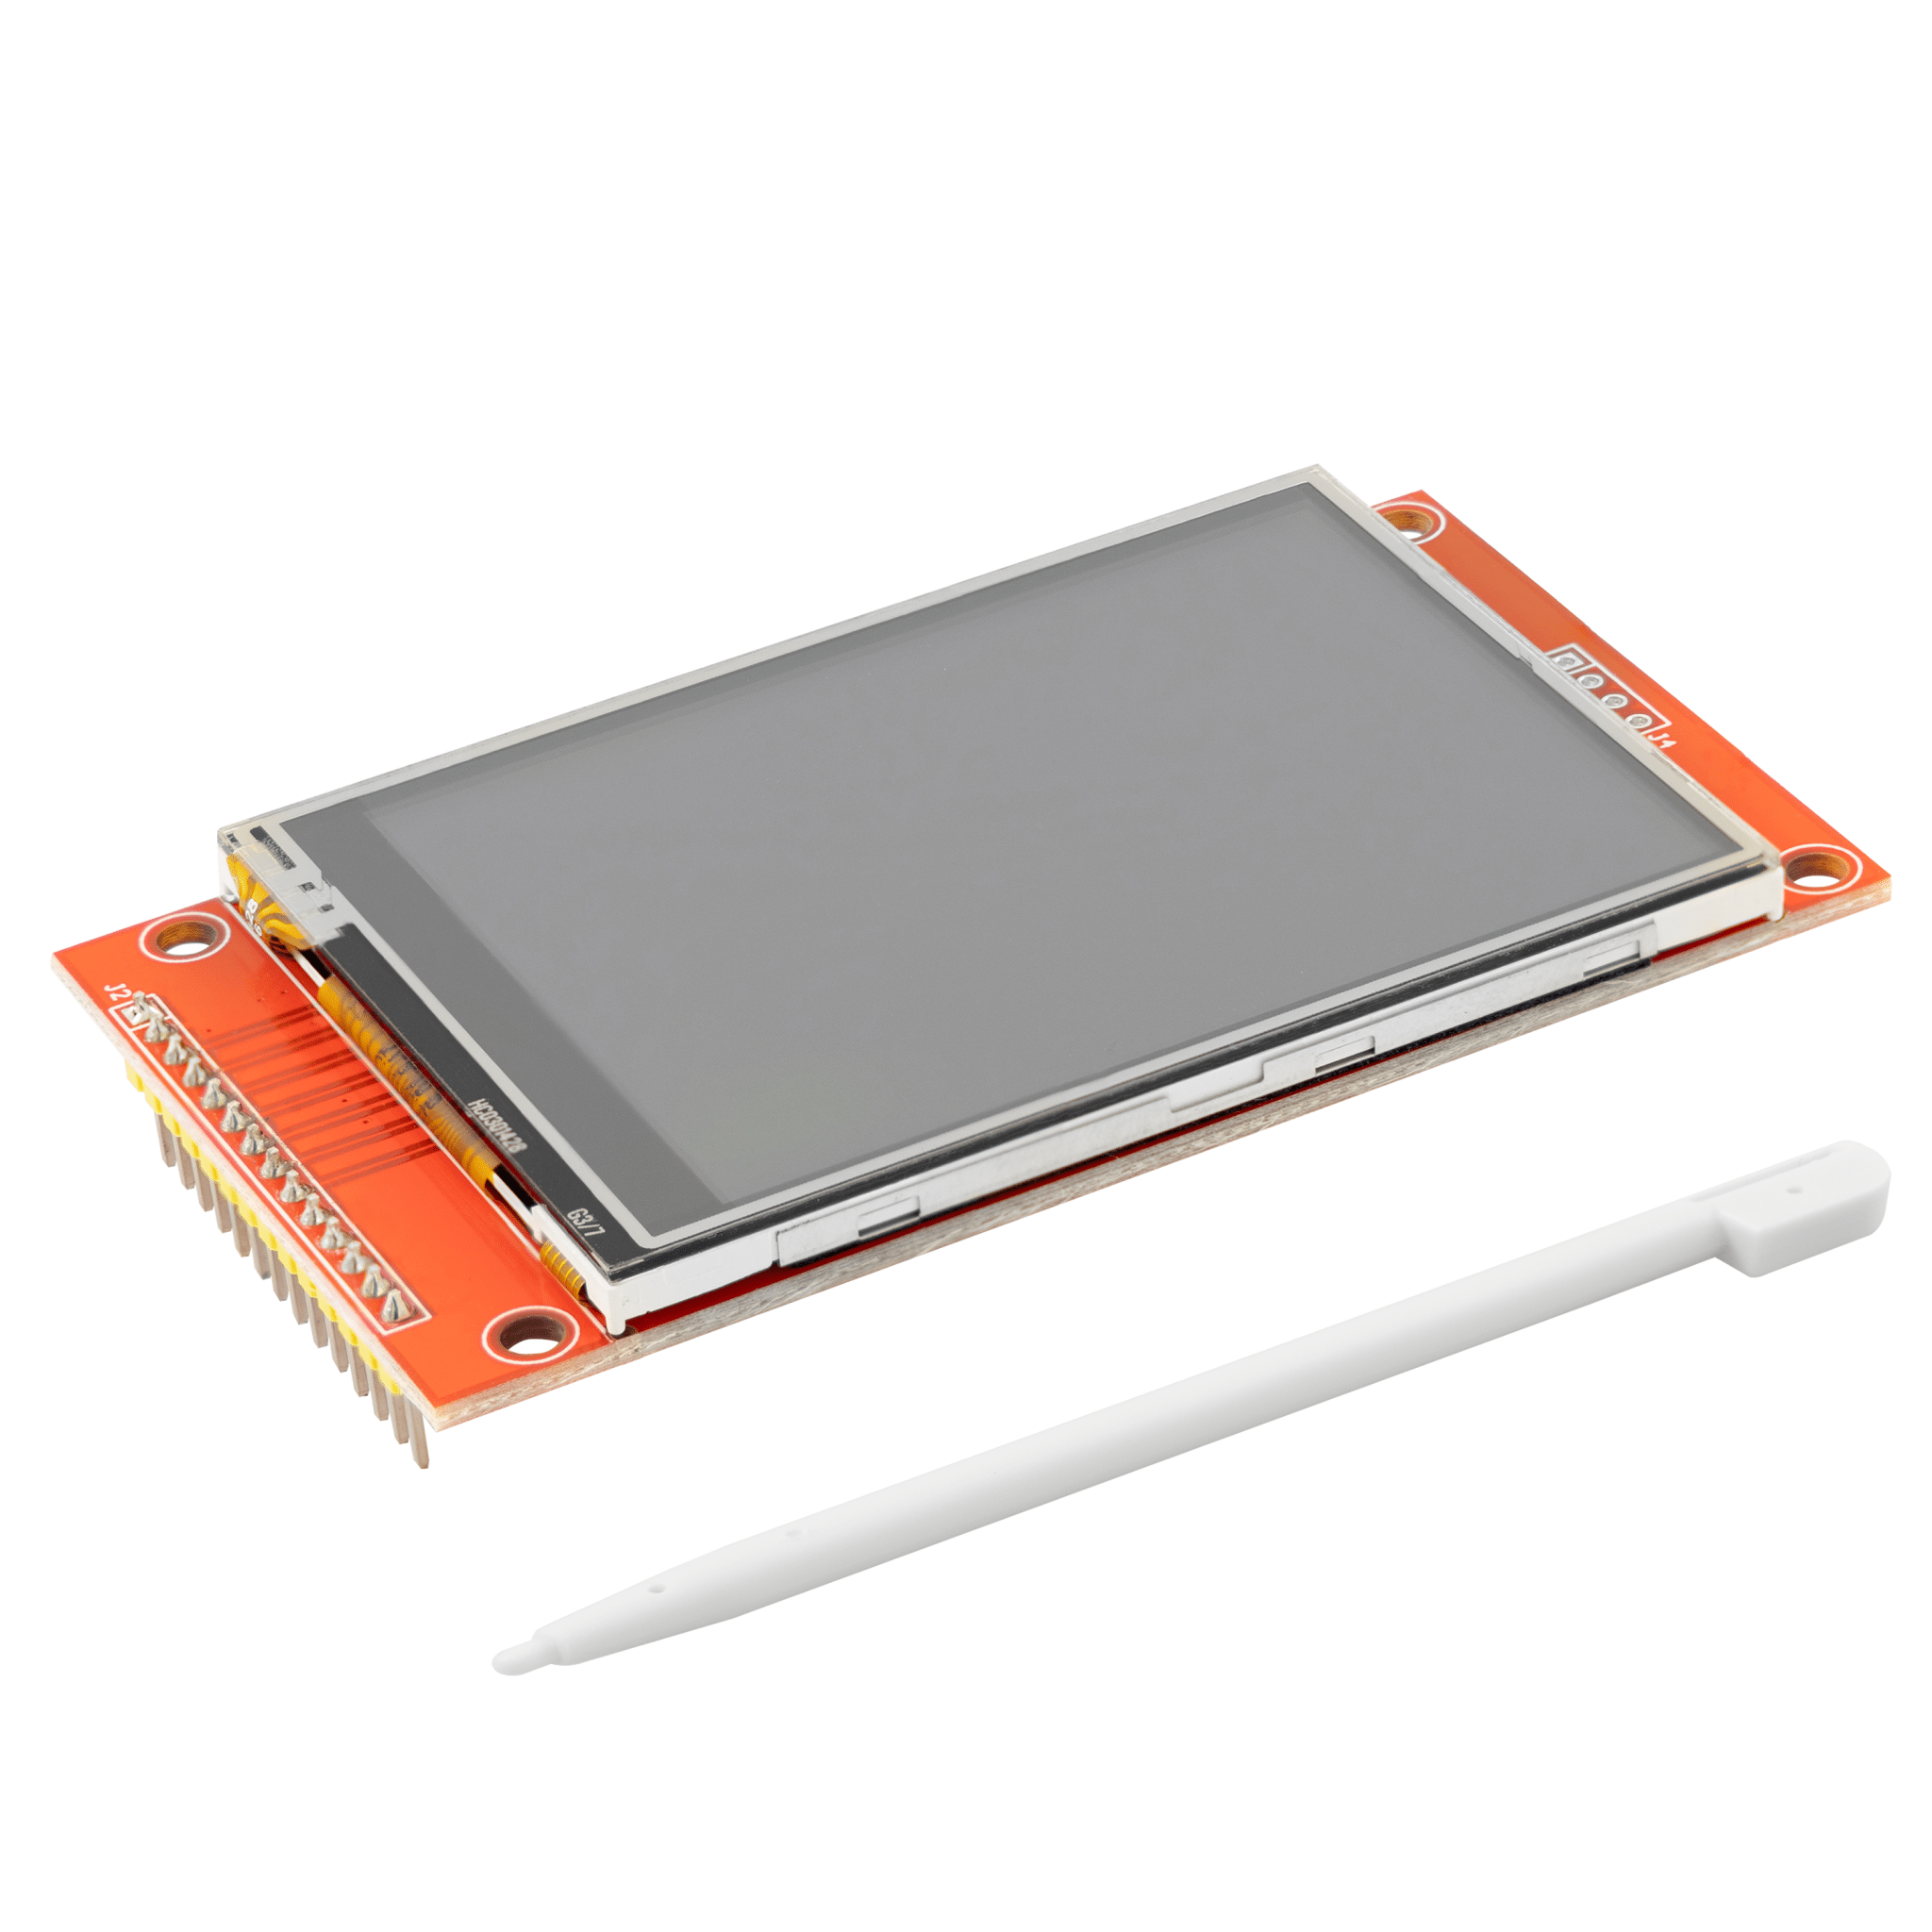 Écran tactile LCD TFT 2,8 pouces - Compatible avec Arduino et Raspberry